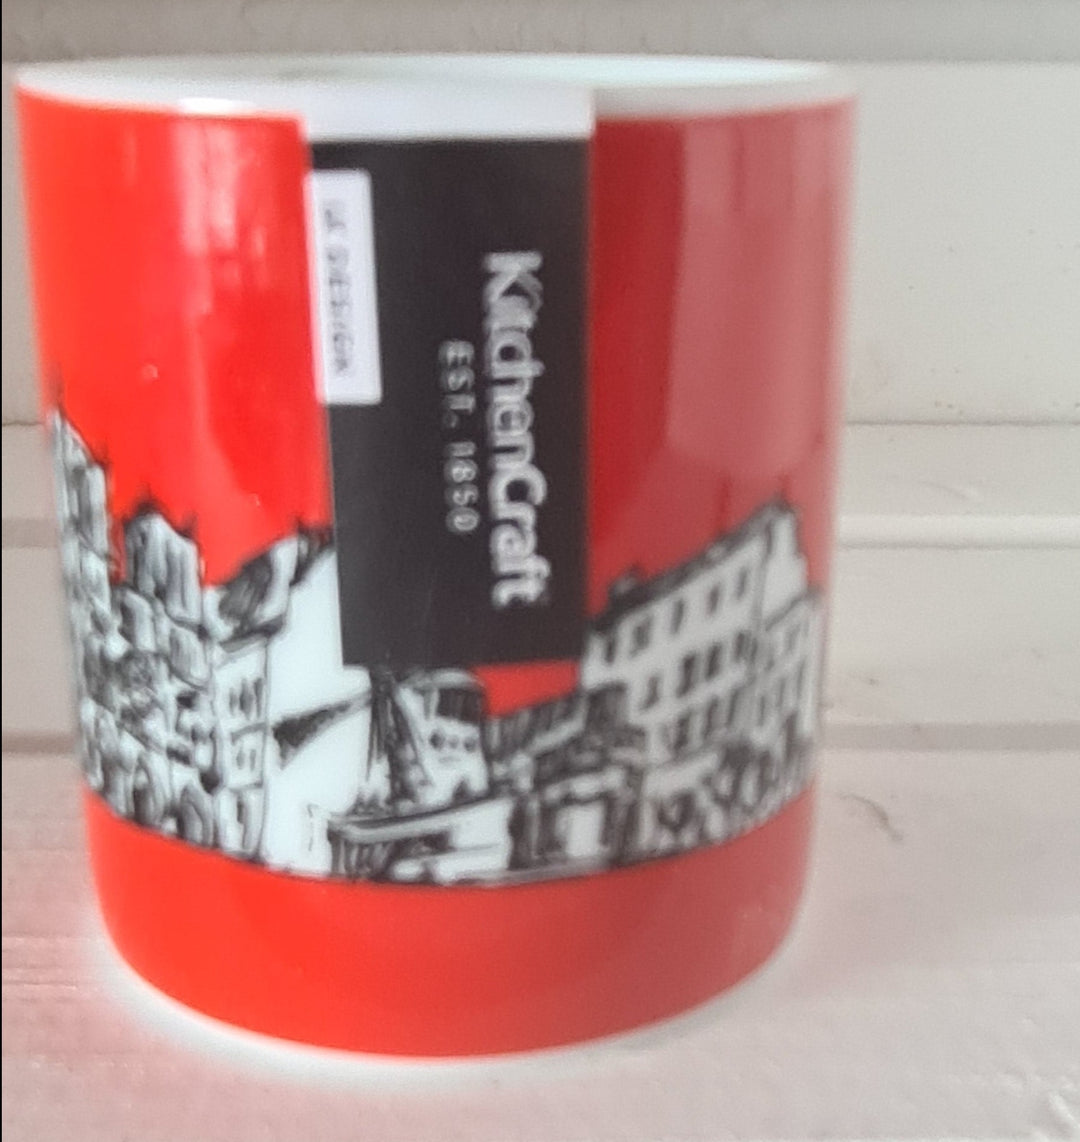 Kleine Espresso- Tasse mit Paris - Motiven - British Moments / Fernweh-Kaufhaus